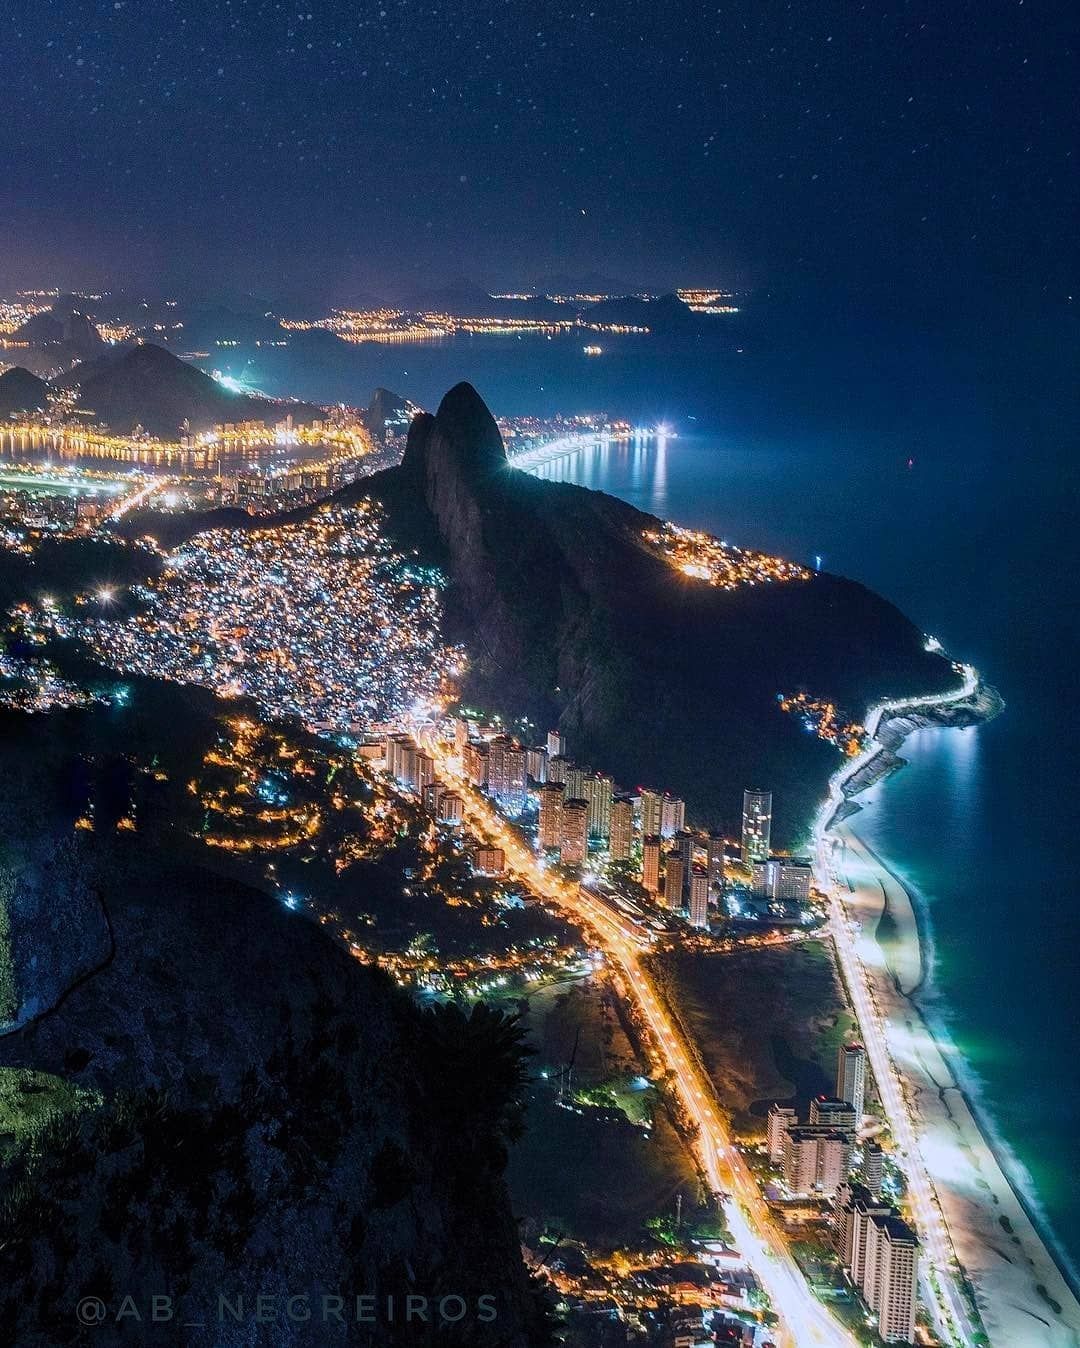 Conheça os principais pontos turísticos do Rio de Janeiro e descubra os melhores empreendimentos na cidade maravilhosa. Crédito: @ab_negreiros